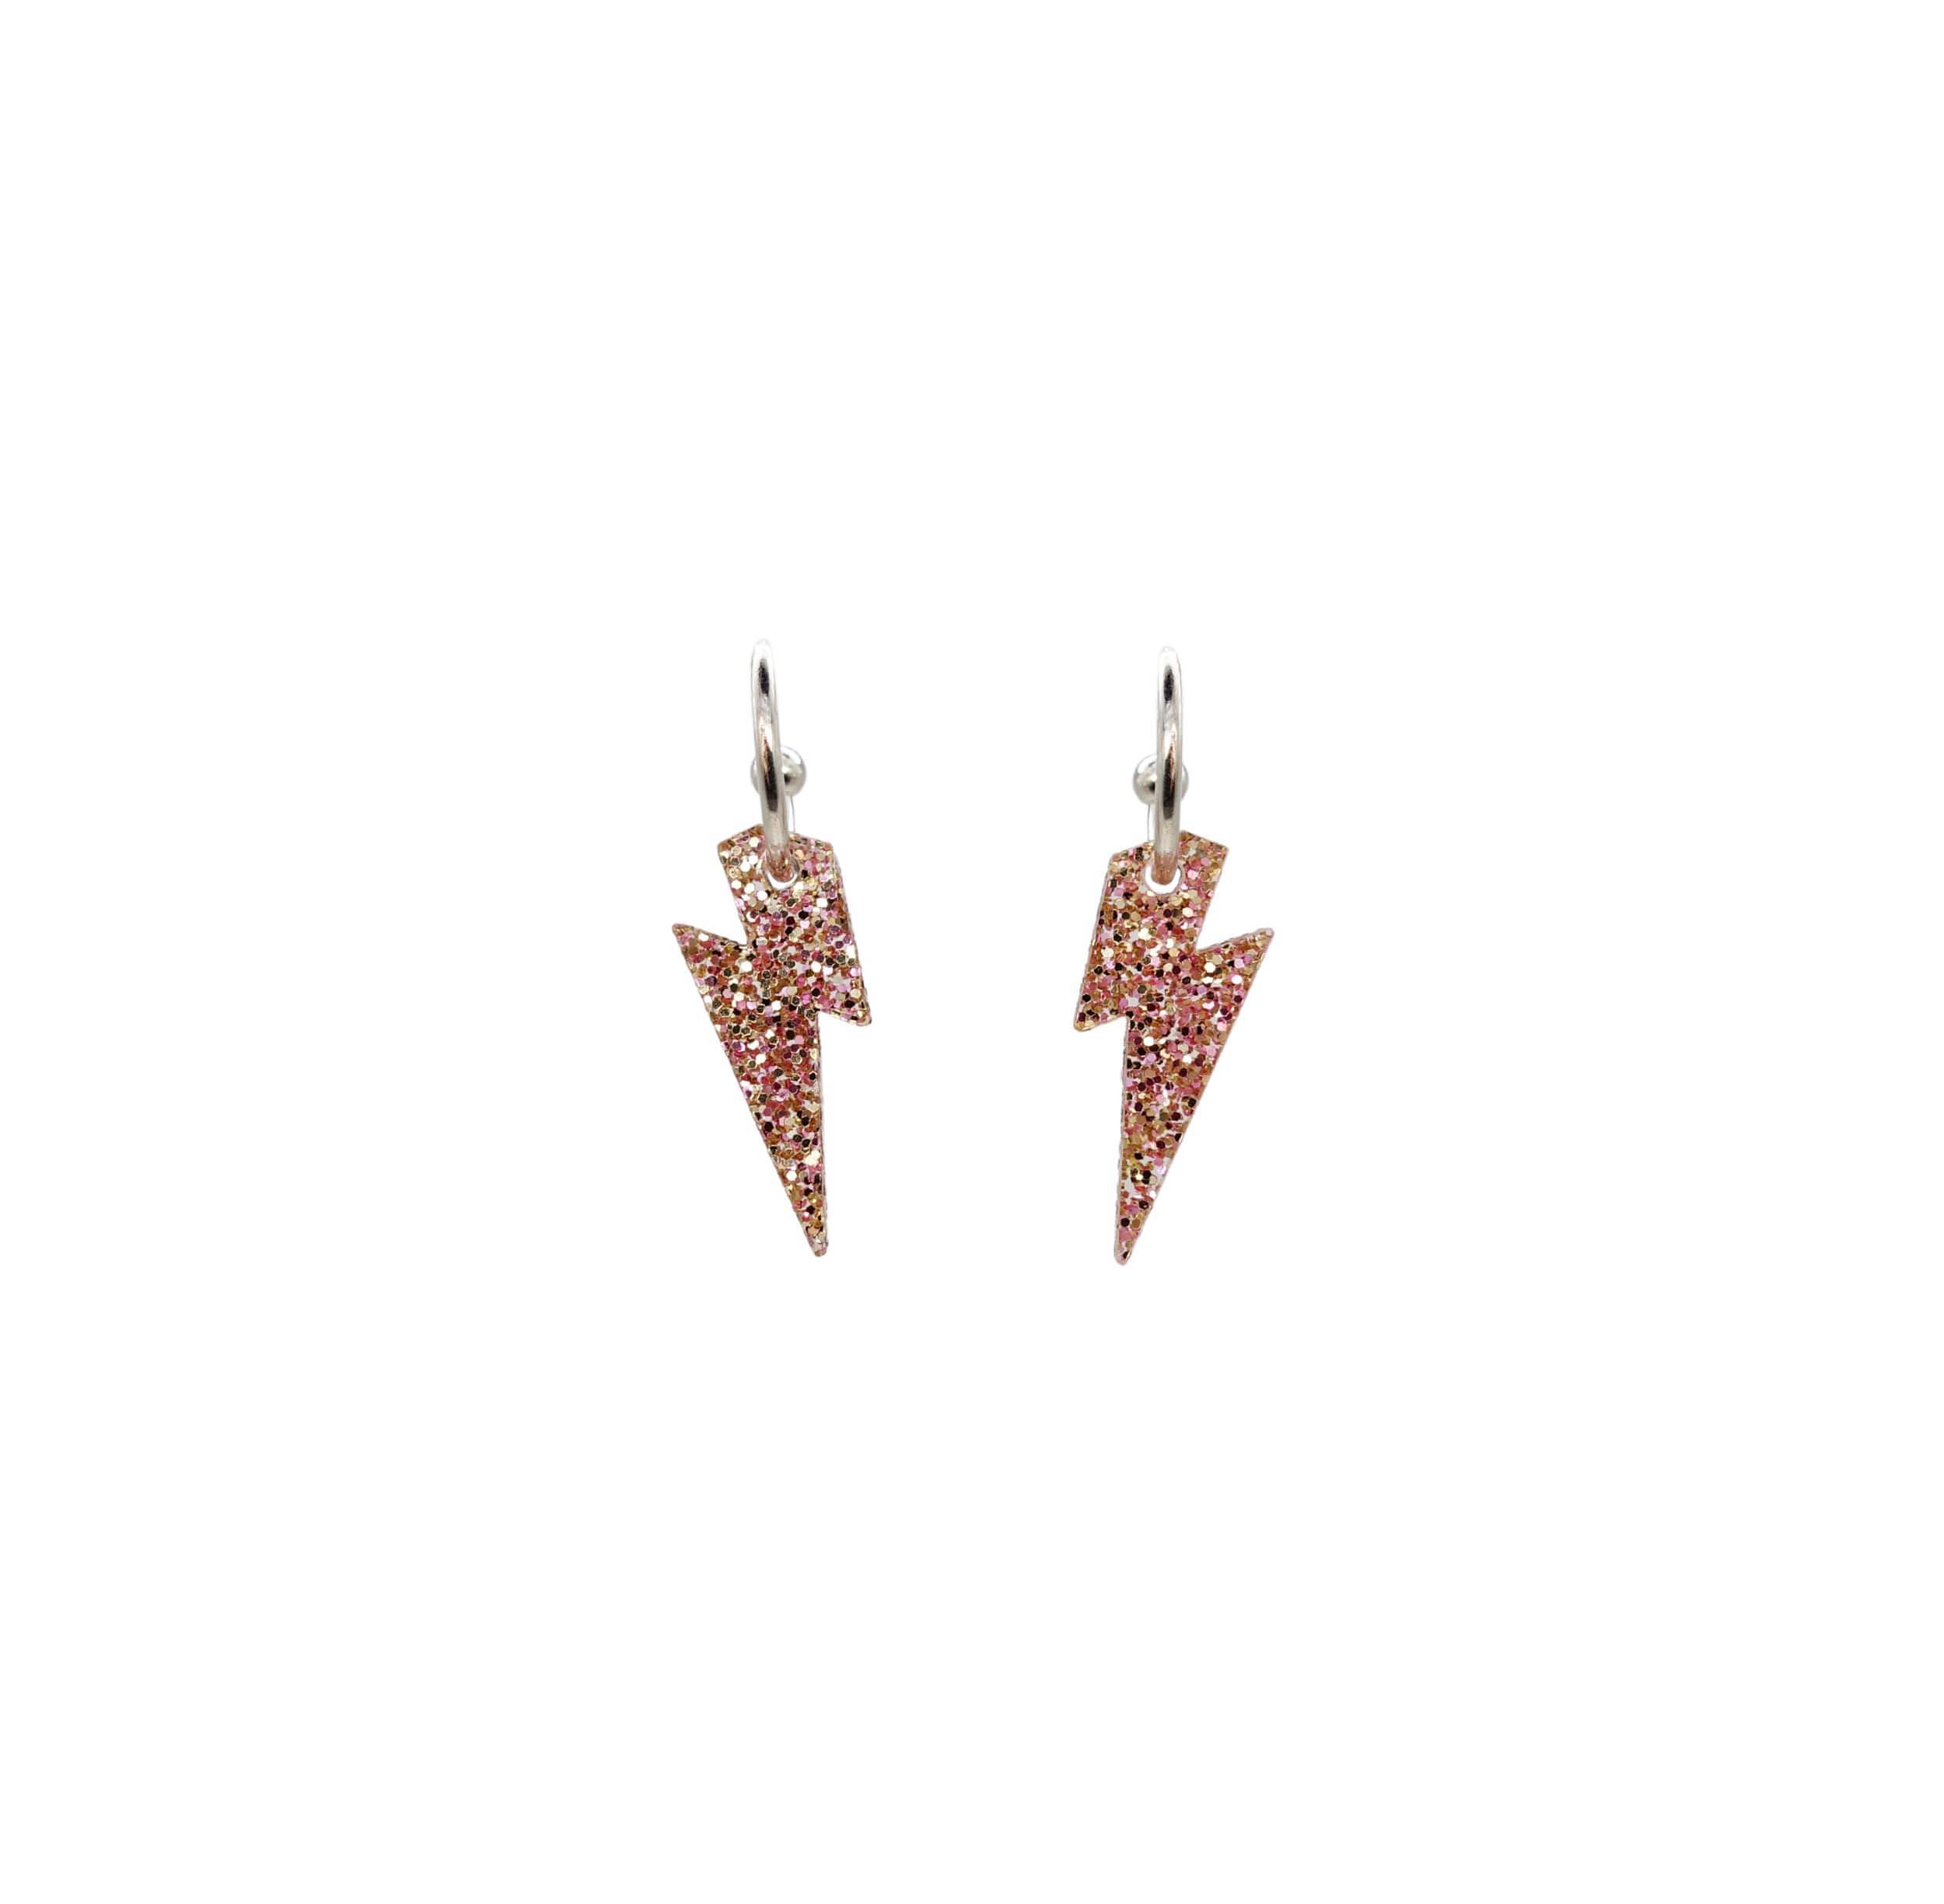 Lightning bolt hoop earrings in pink fizz glitter. 